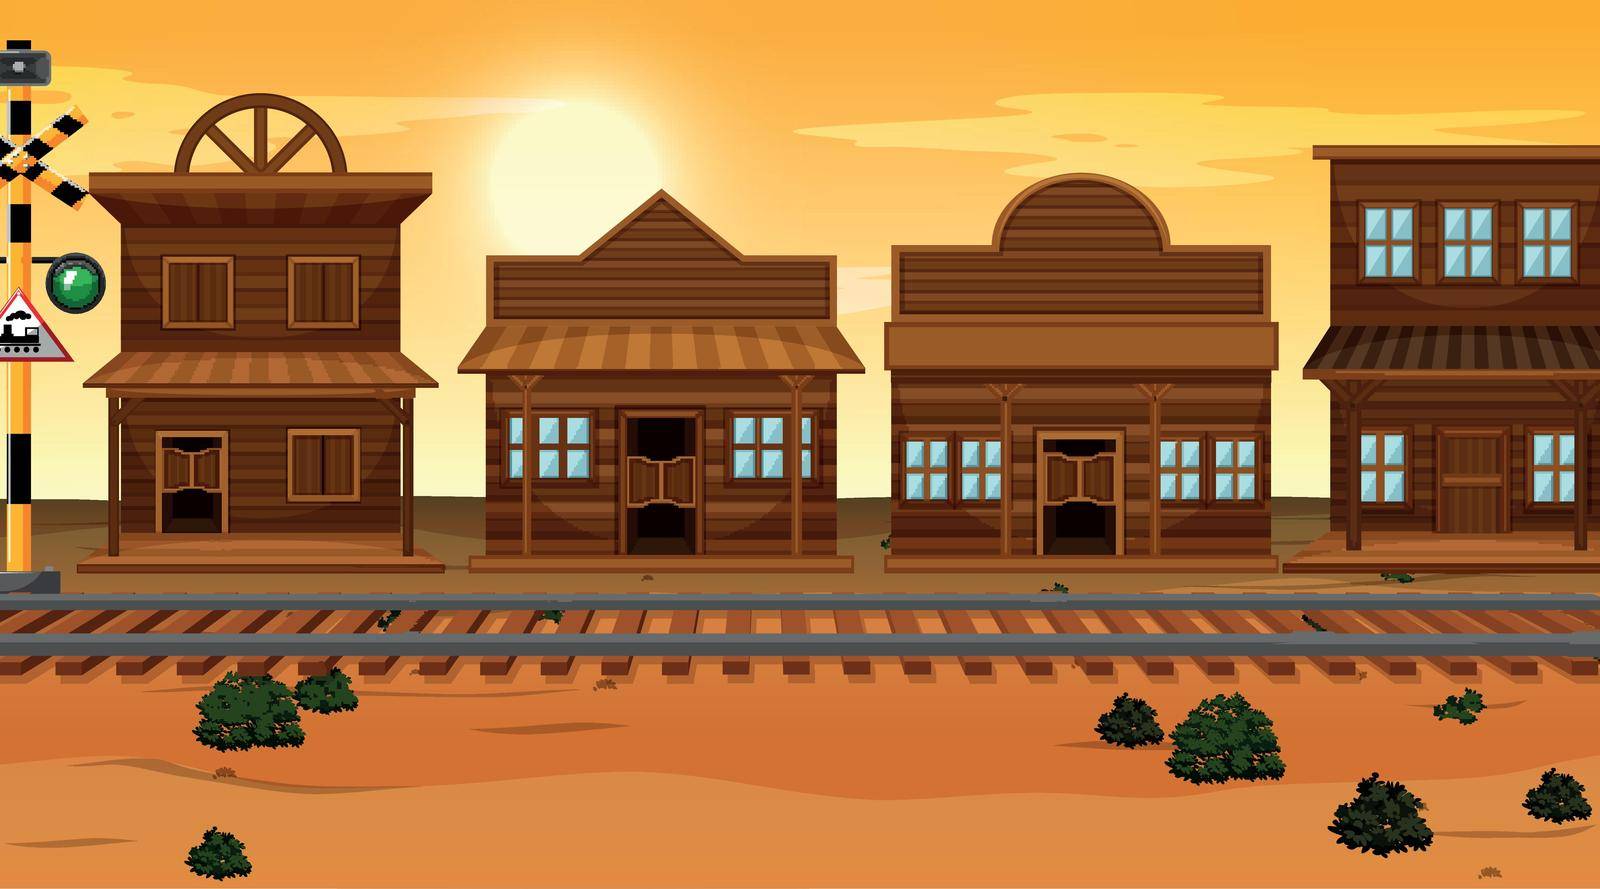 Desert town background scene illustration